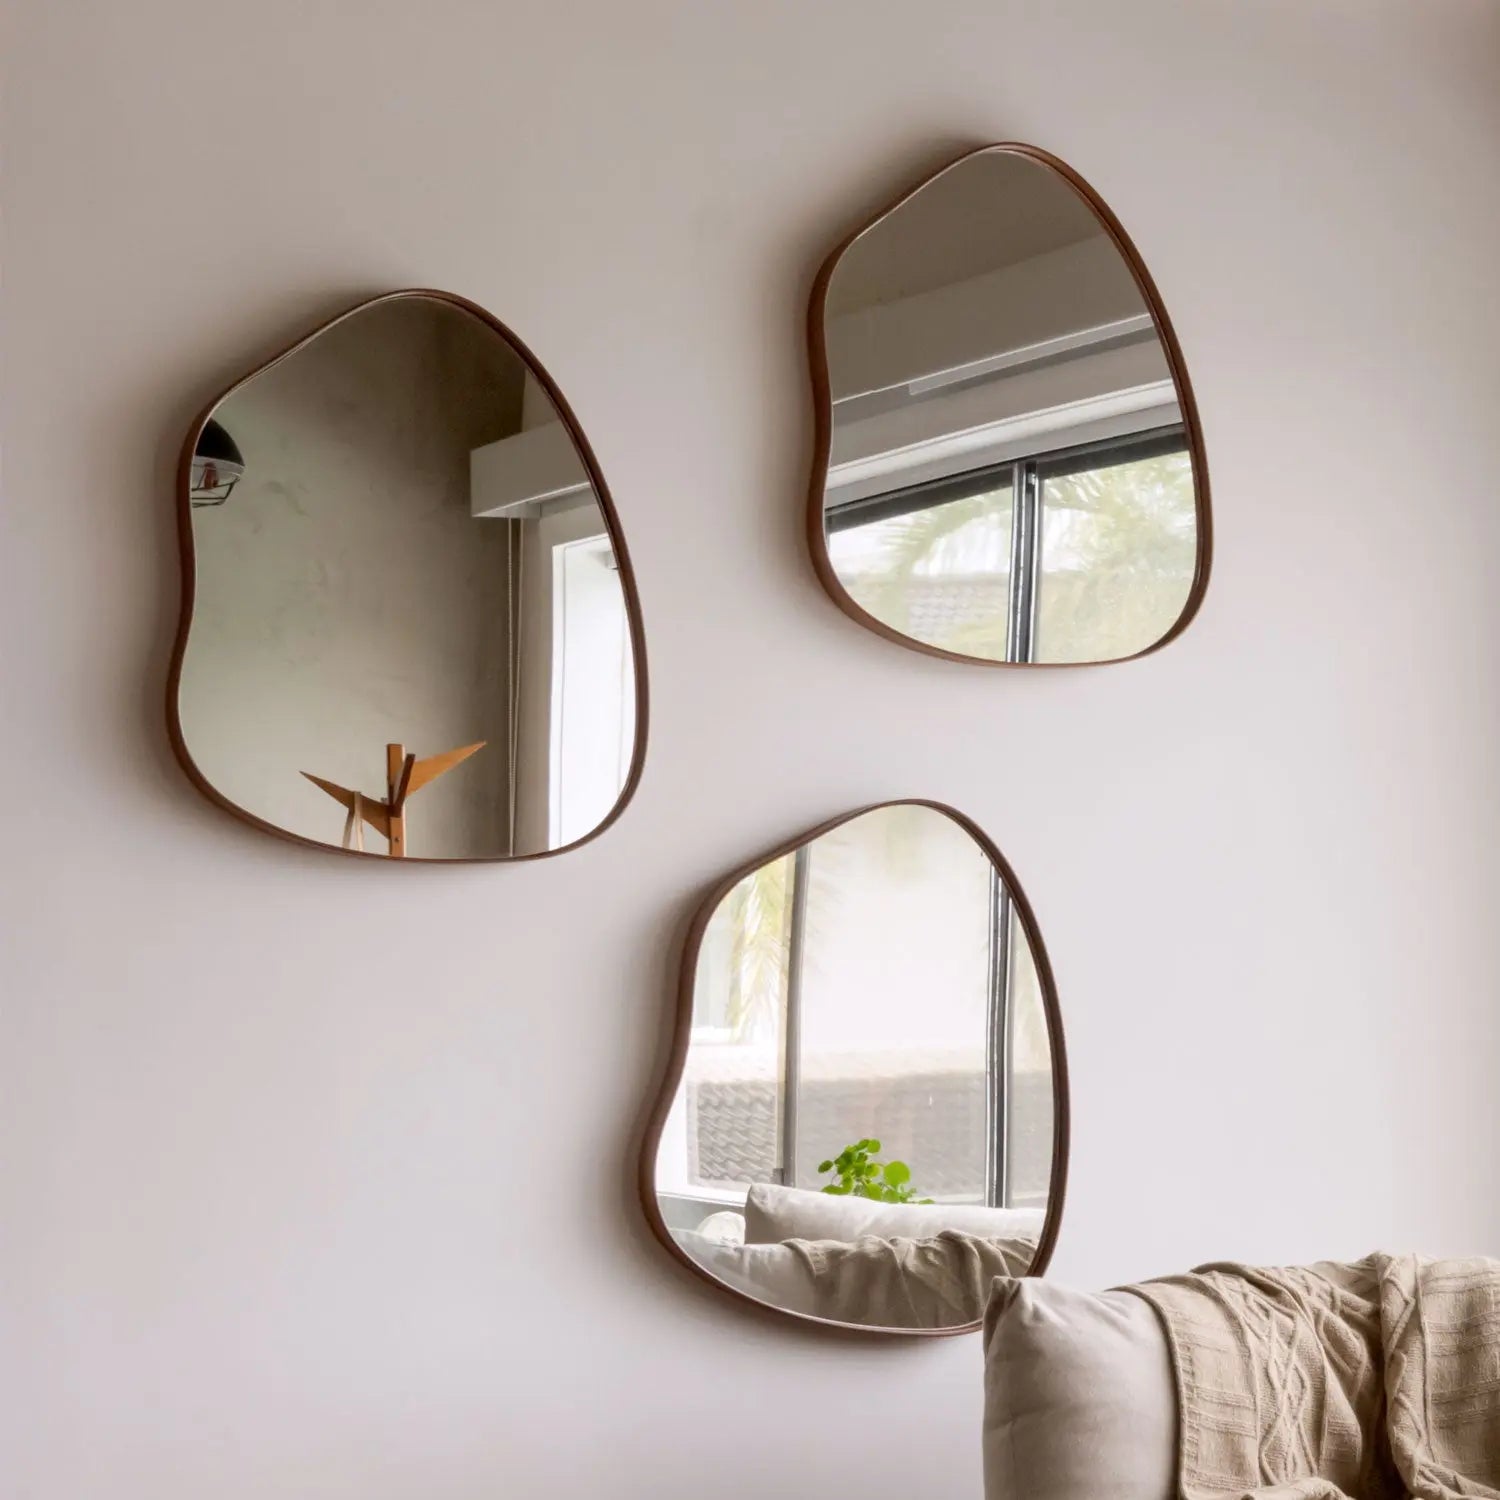 Homedock Espelho Decorativo Orgânico Sollo Nogueira 60 cm Aprimore